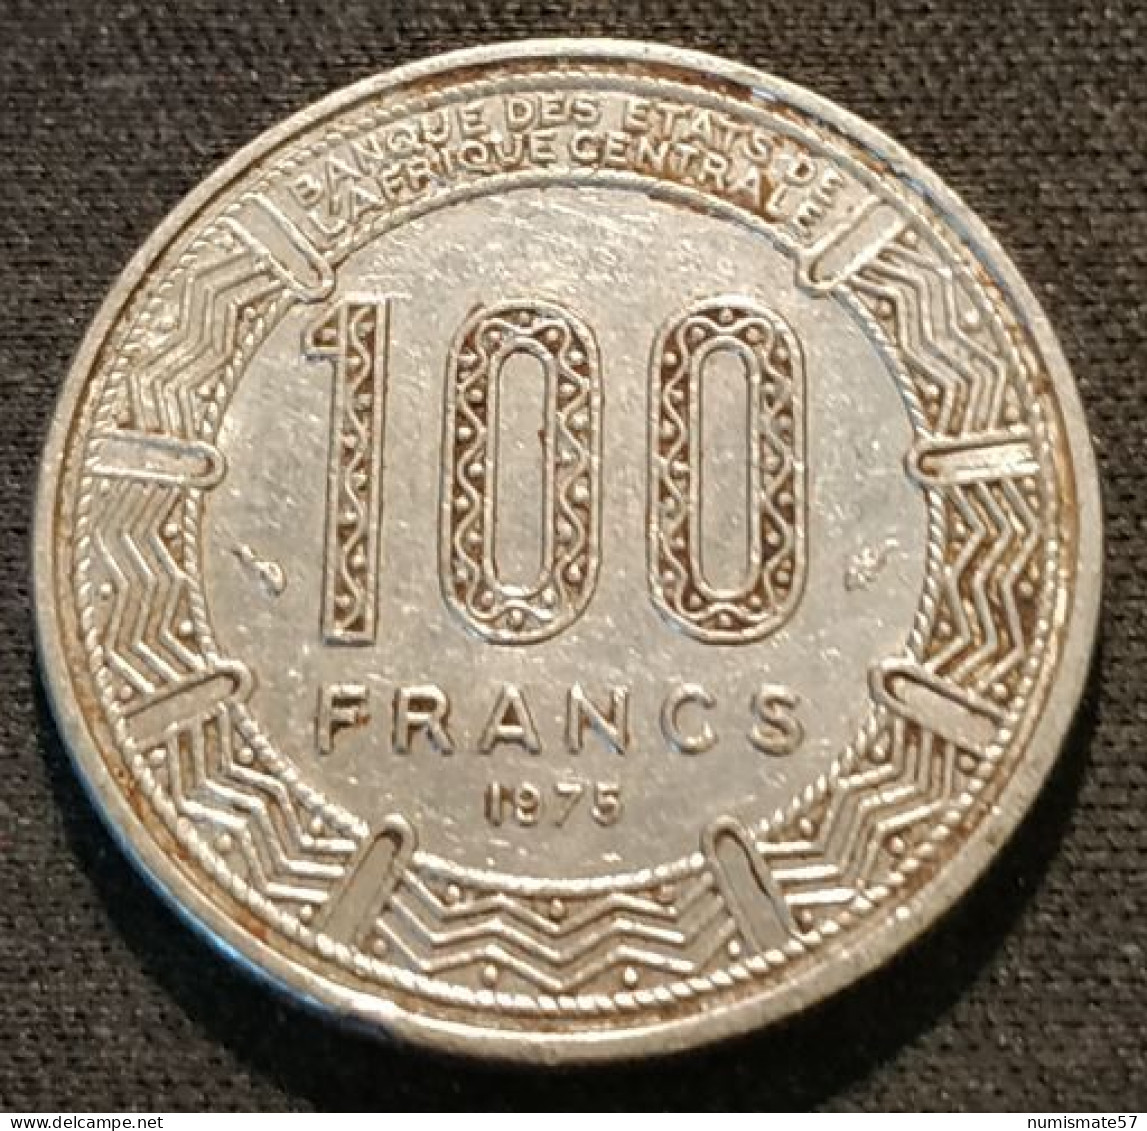 CAMEROUN - 100 FRANCS 1975 - KM 17 - Camerún